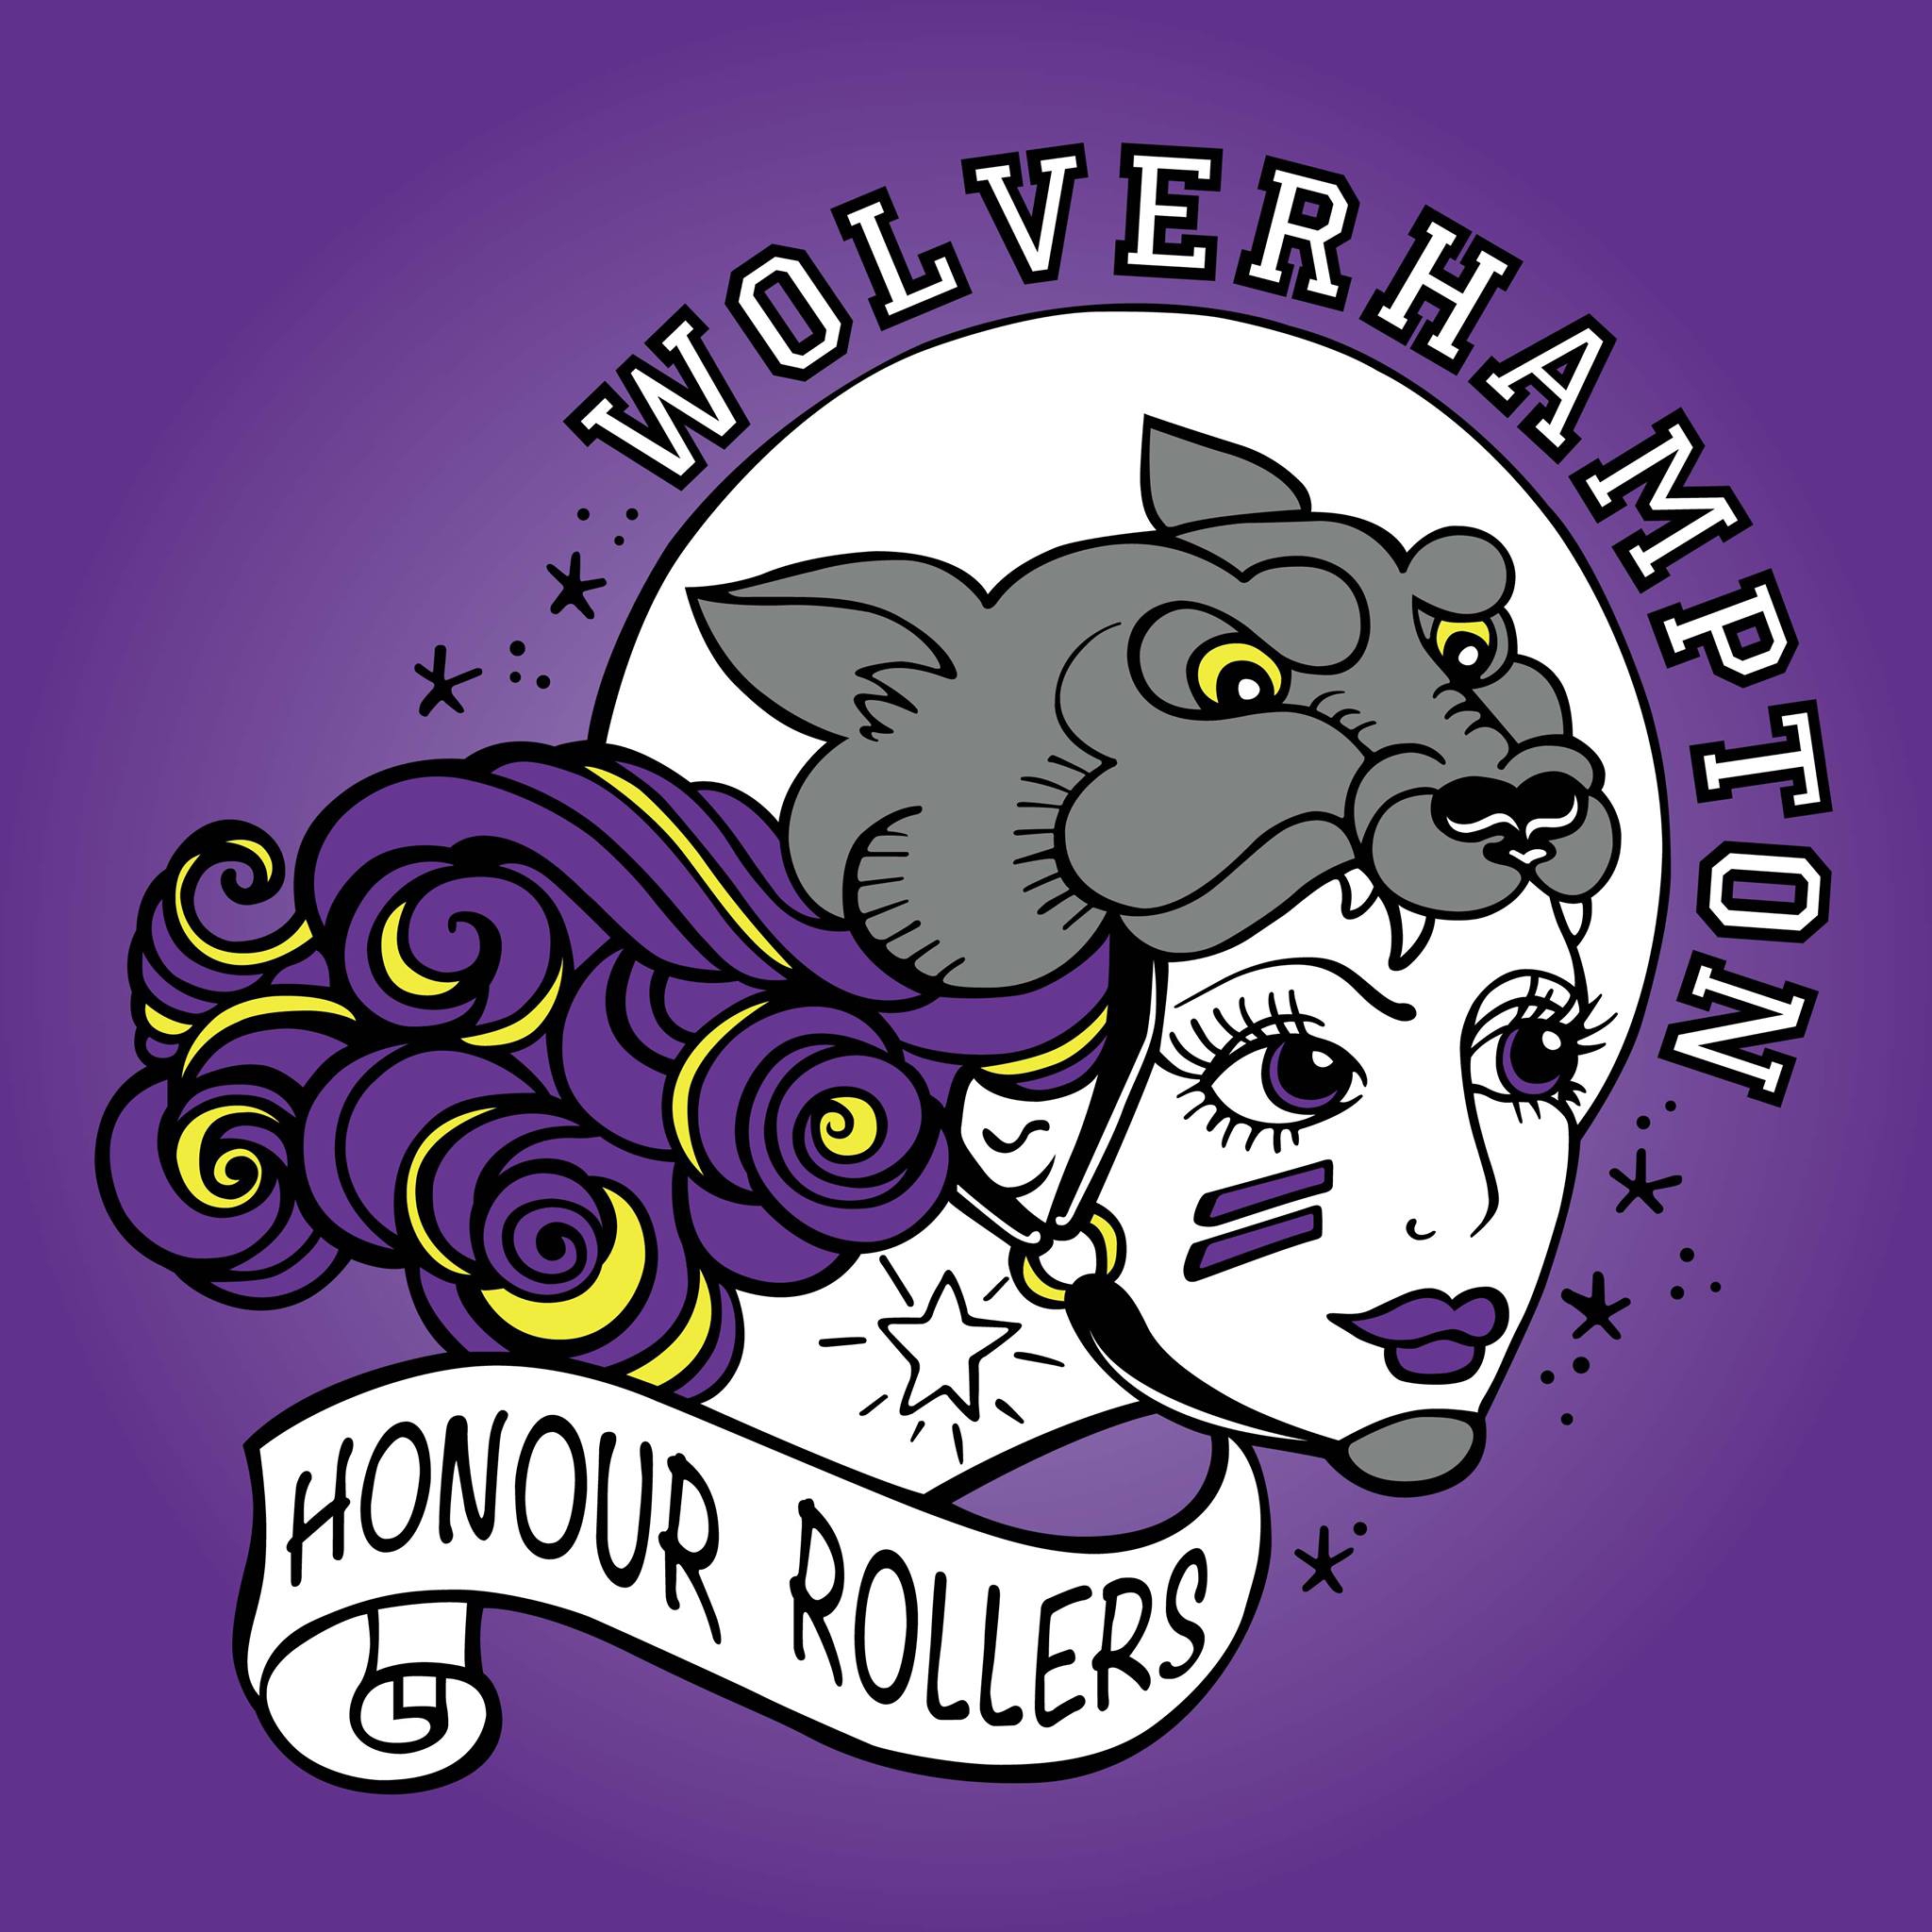 Wolverhampton Honour Rollers